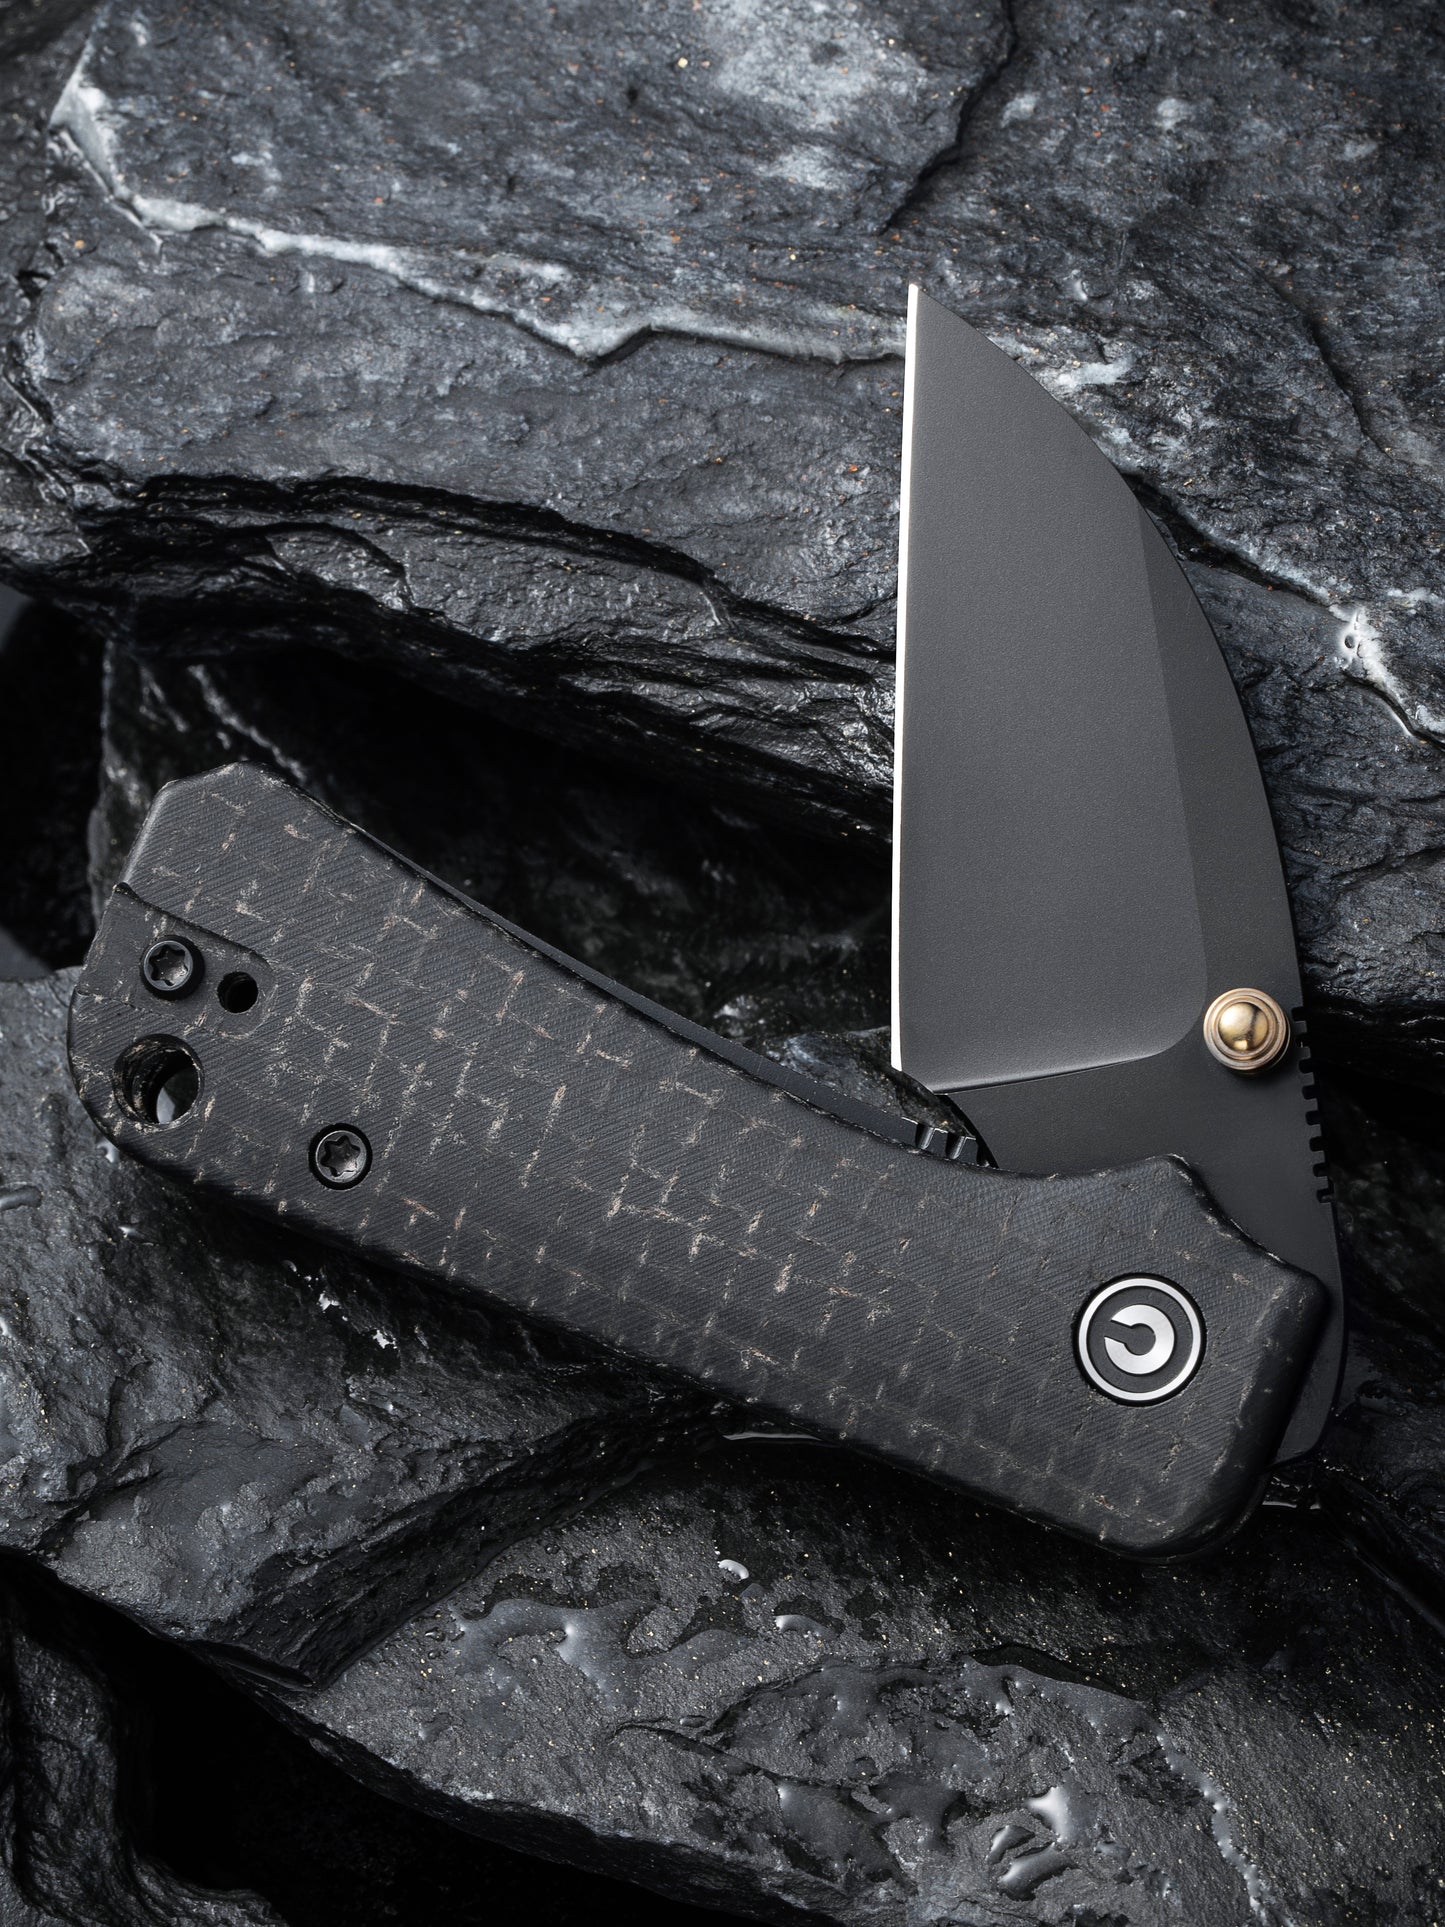 Civivi Baby Banter Wharncliffe 2.32" Black Nitro-V Black Burlap Micarta Folding Knife C19068SC-1